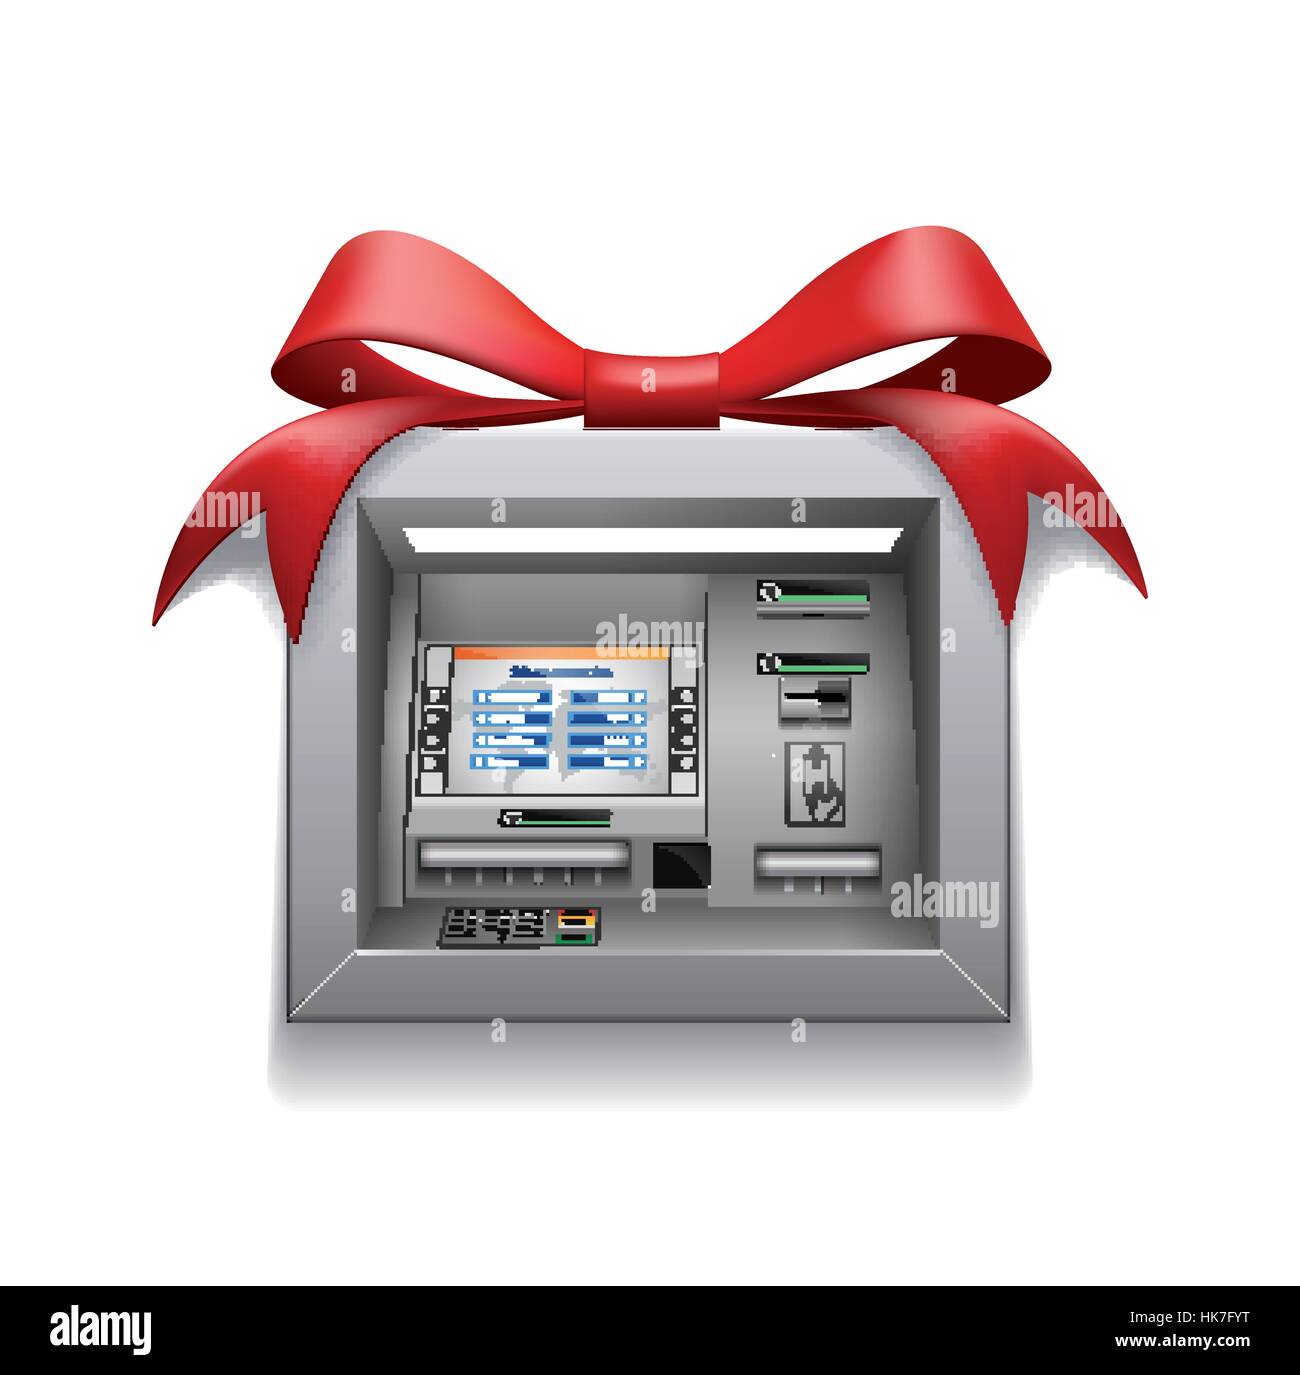 ATM - guichet automatique - finances publiques dans le monde entier Illustration de Vecteur